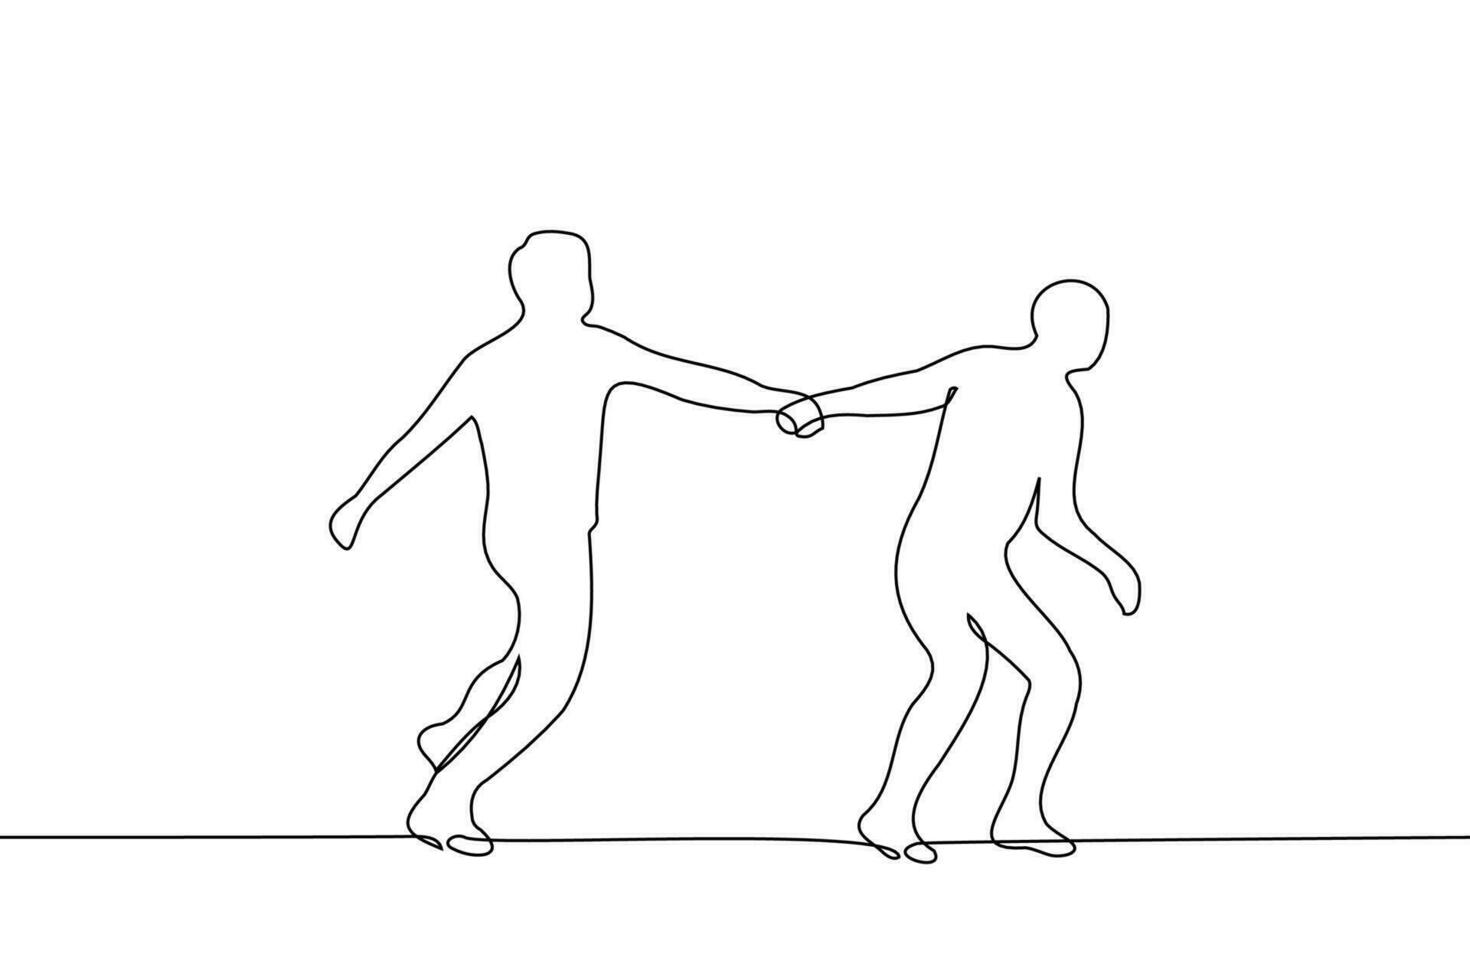 Mens loopt grijpen de hand- van een ander - een lijn tekening vector. concept silhouet van rennen mensen een van welke Leidt vector